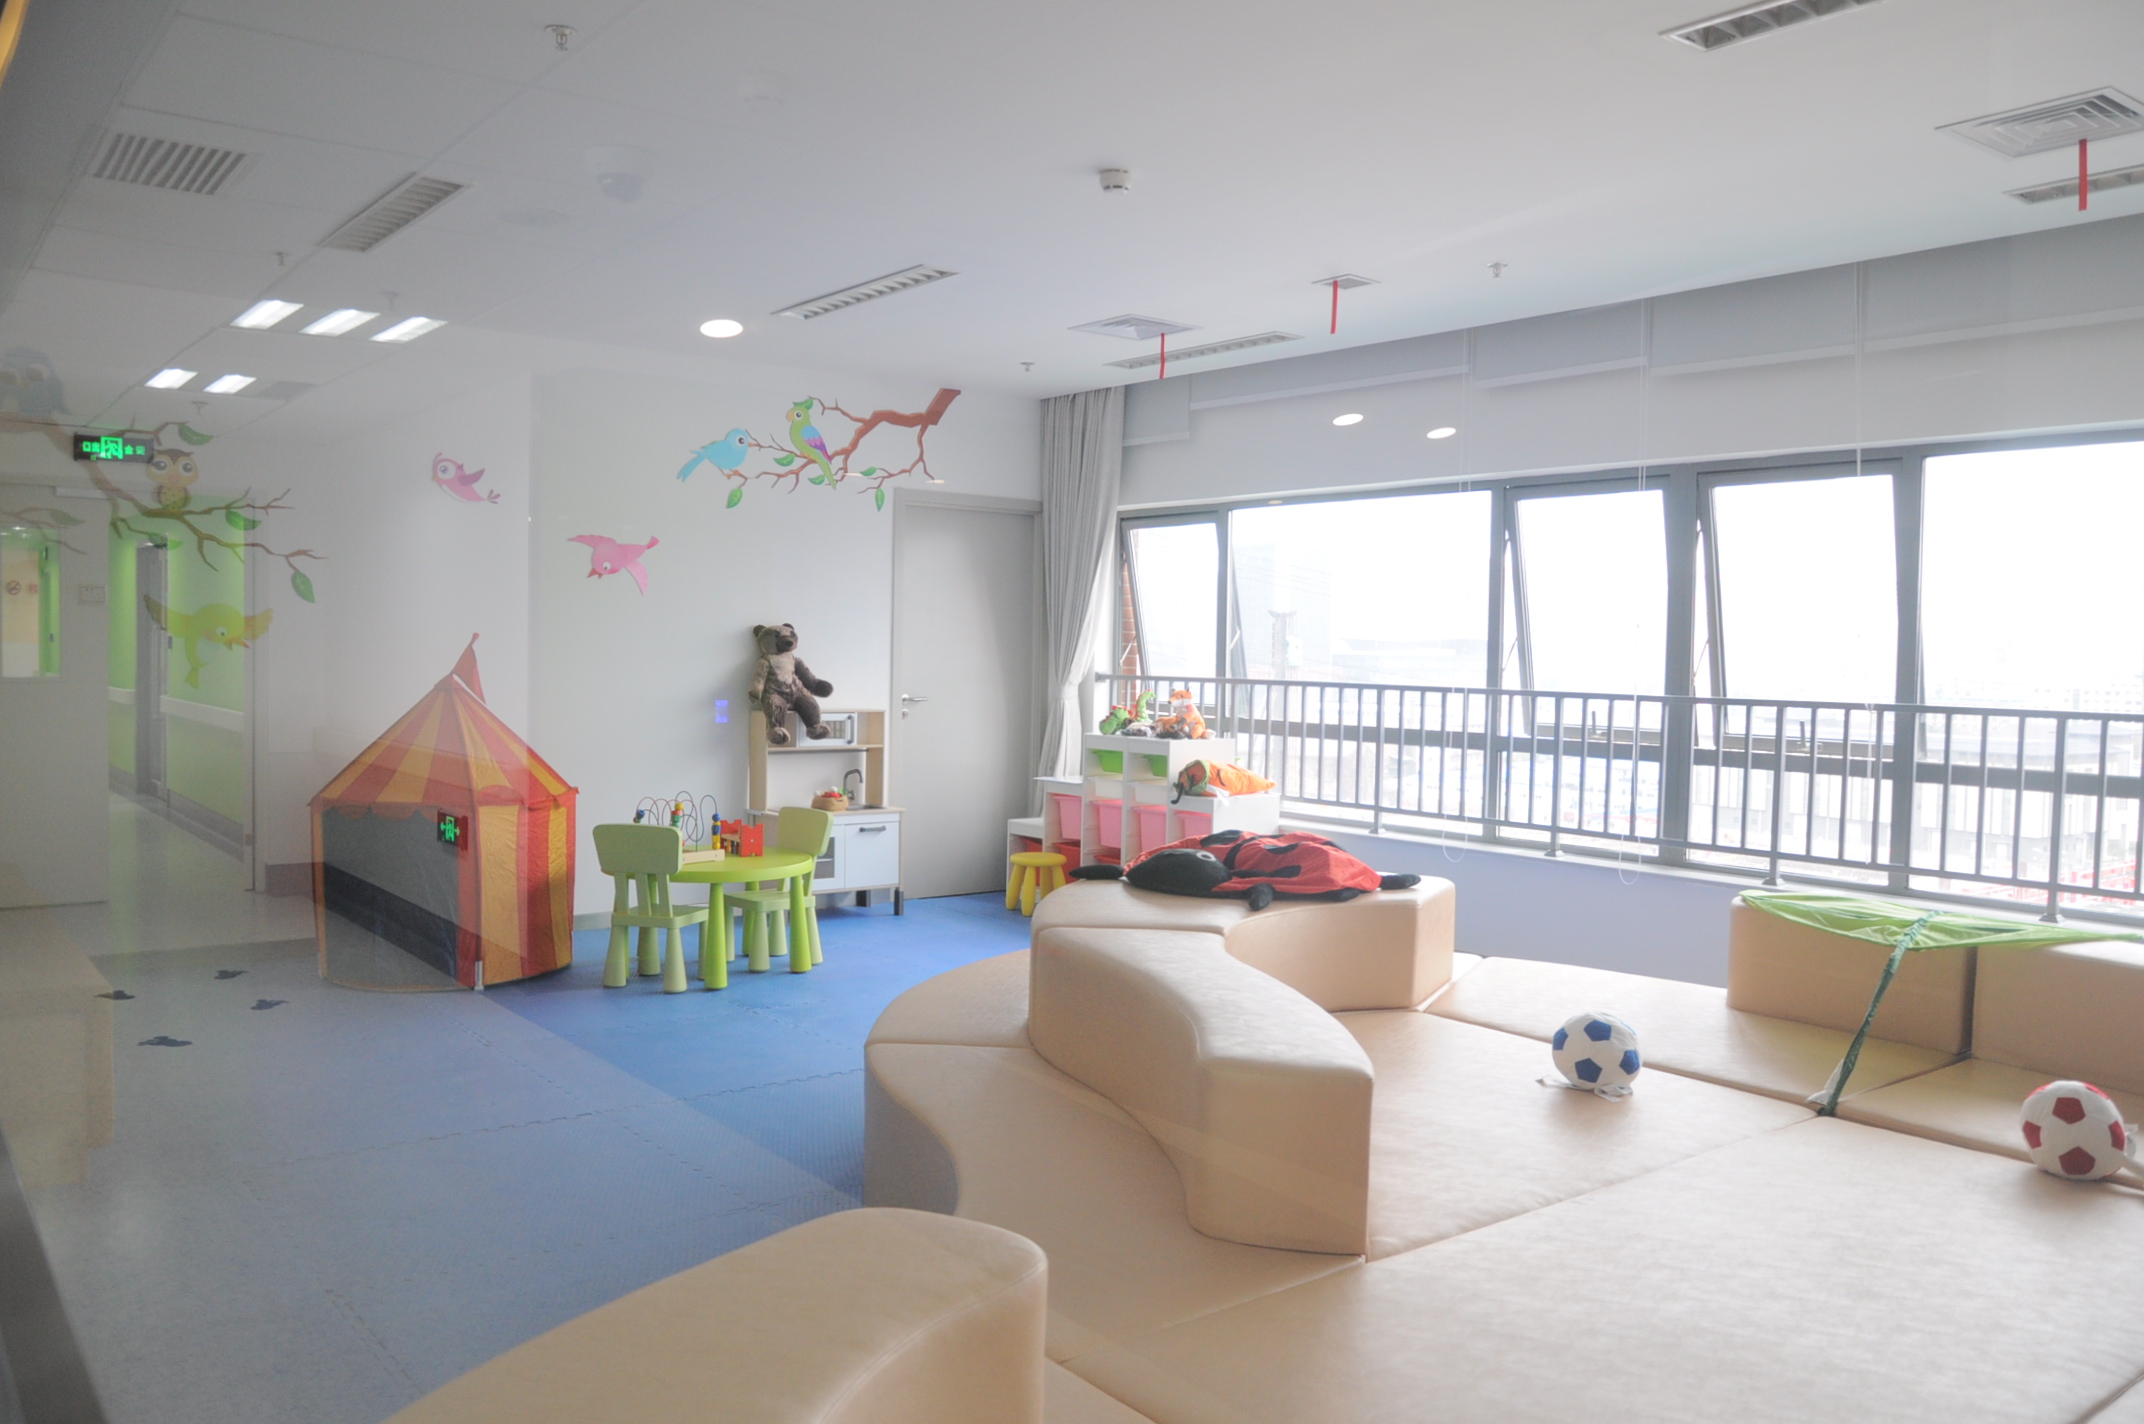 日本儿童关怀医院:给重病孩子一个游乐场